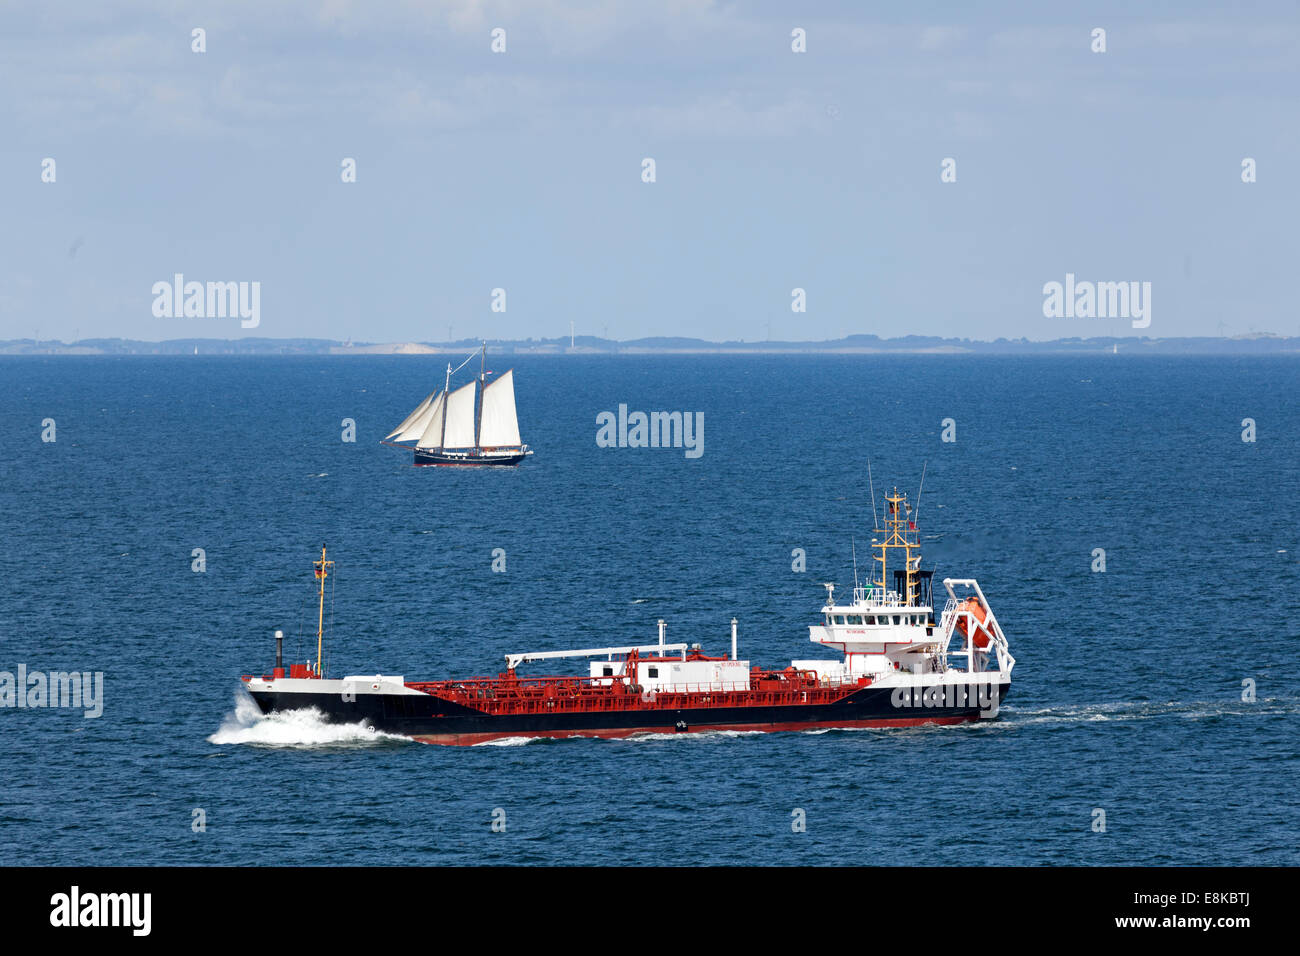 Le transport de marchandises sur la mer Baltique près de l'île de Langeland, Danemark Banque D'Images